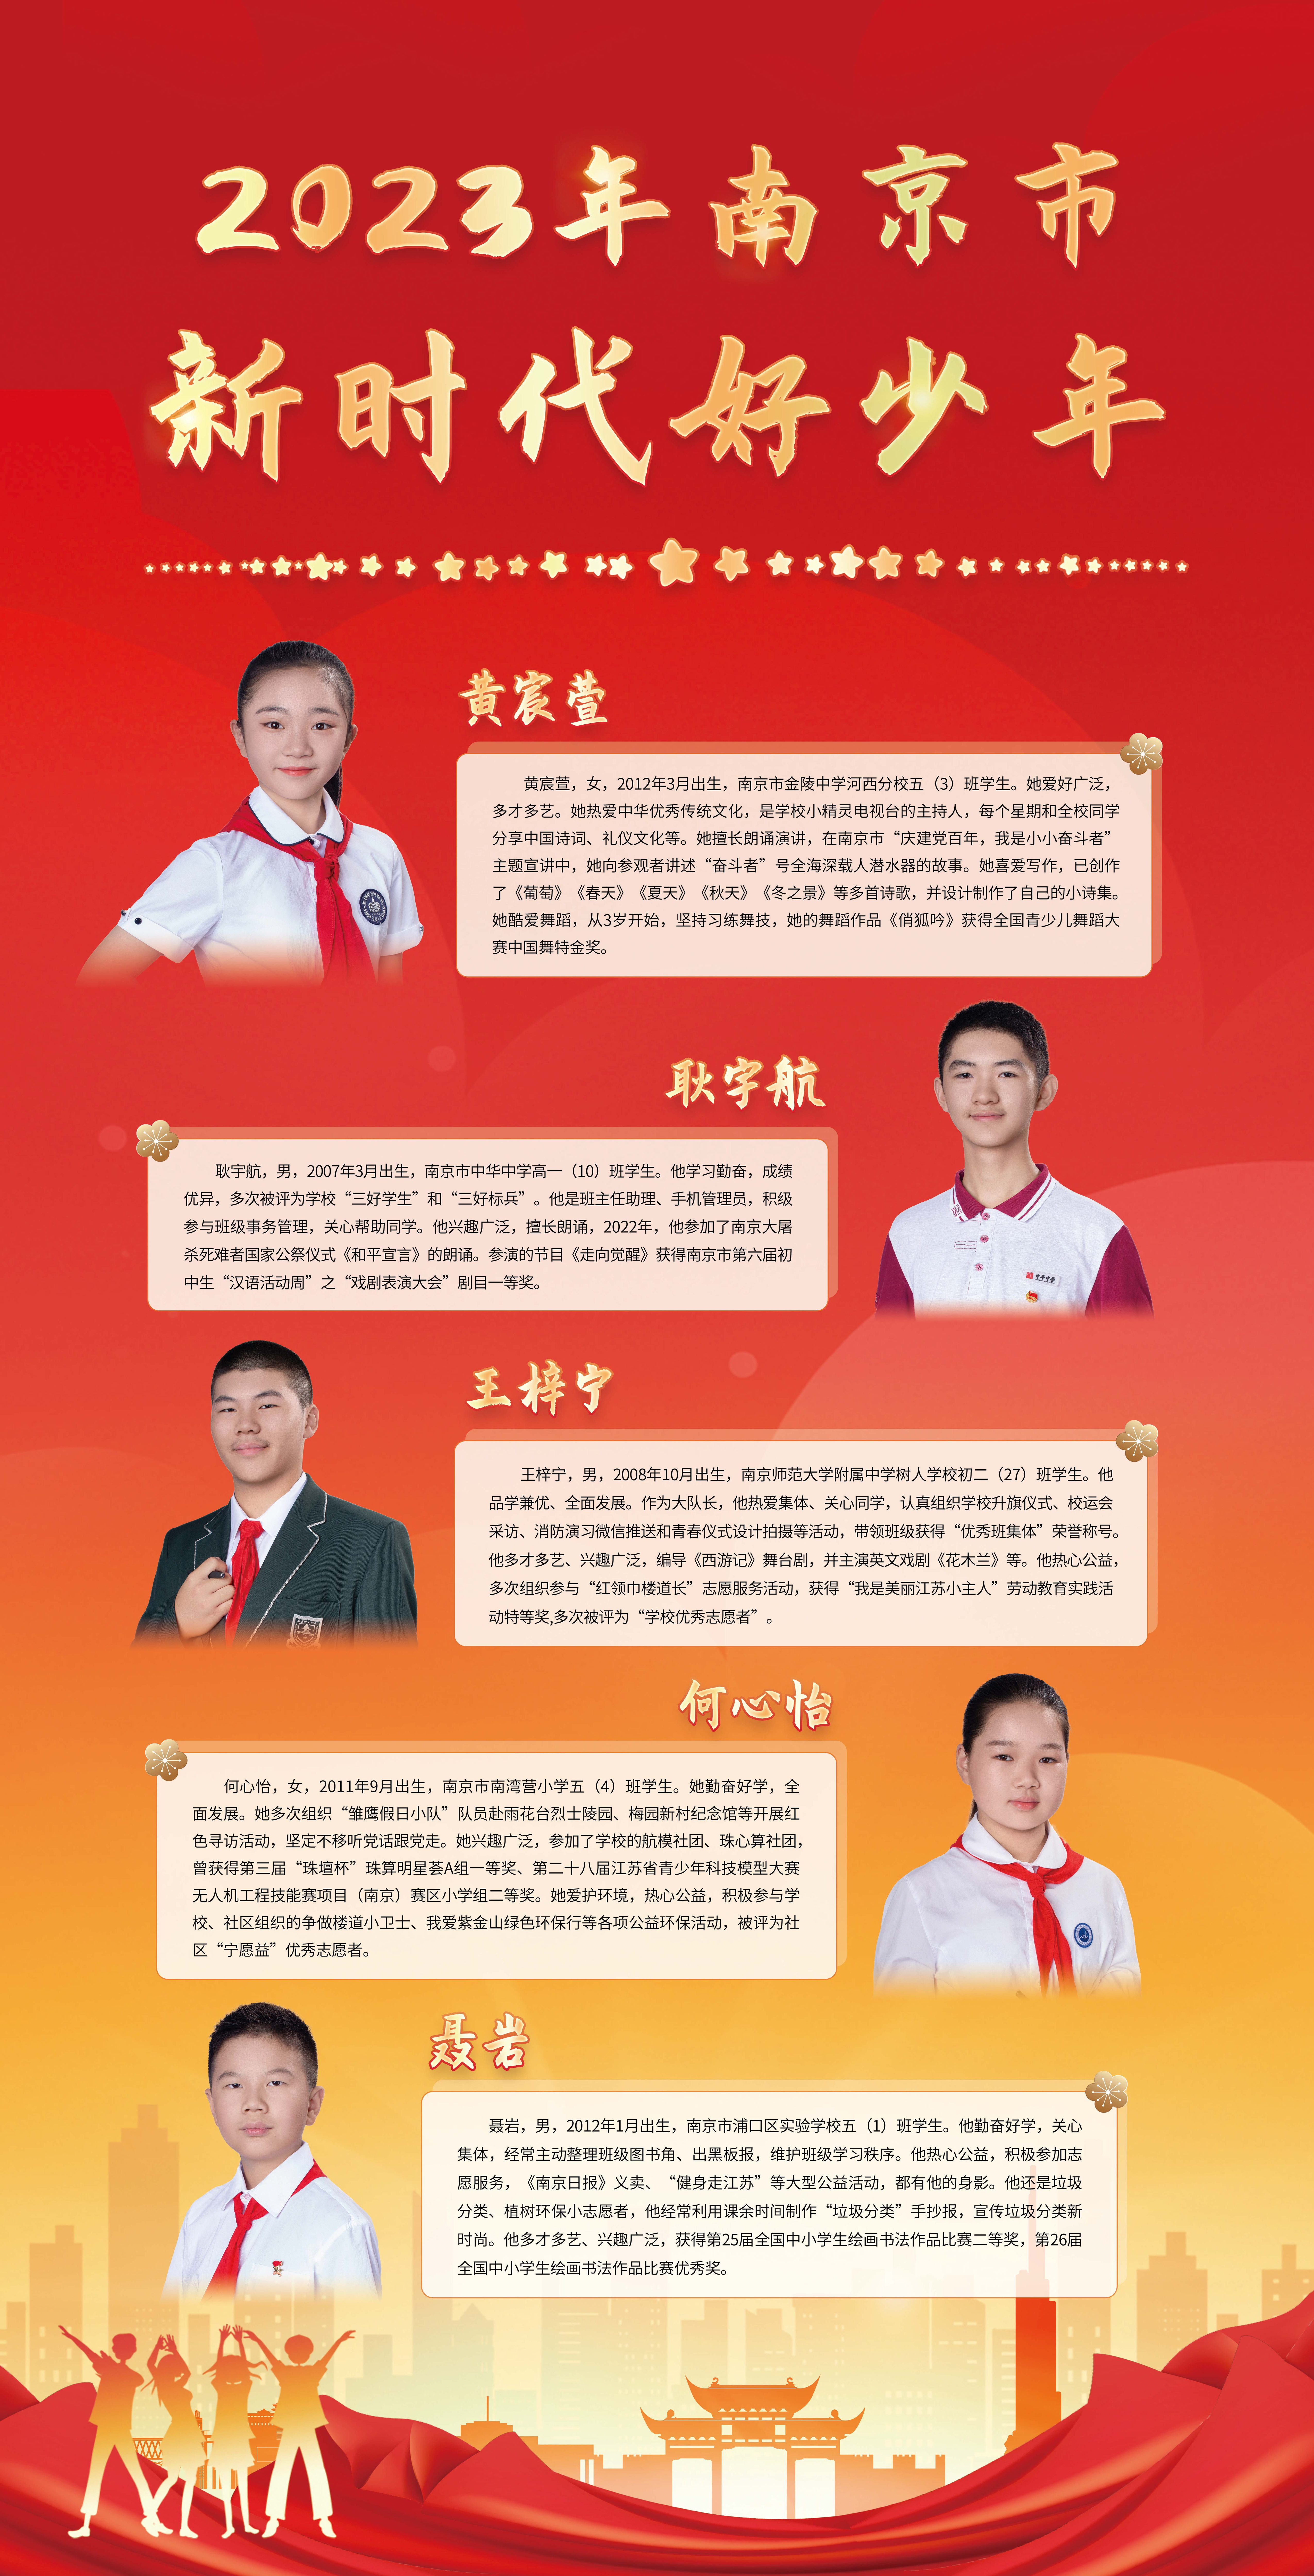 2023-年南京市第一批“新时代好少年”宣传展示图5.jpg